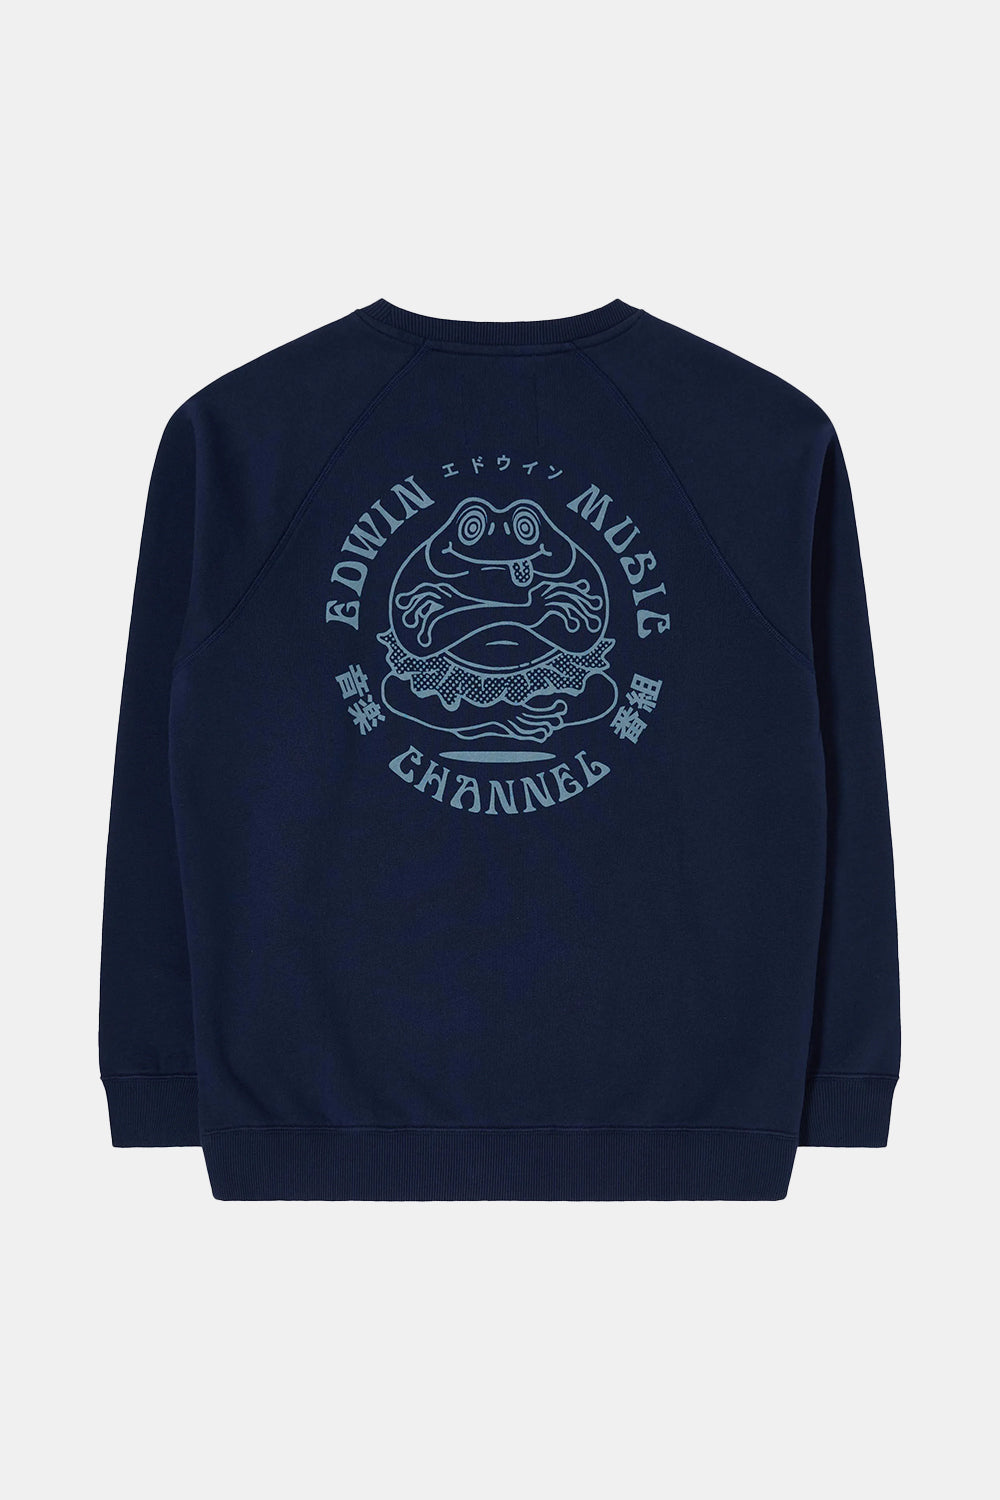 Edwin Music Channel Heavy Sweatshirt (Maritime)